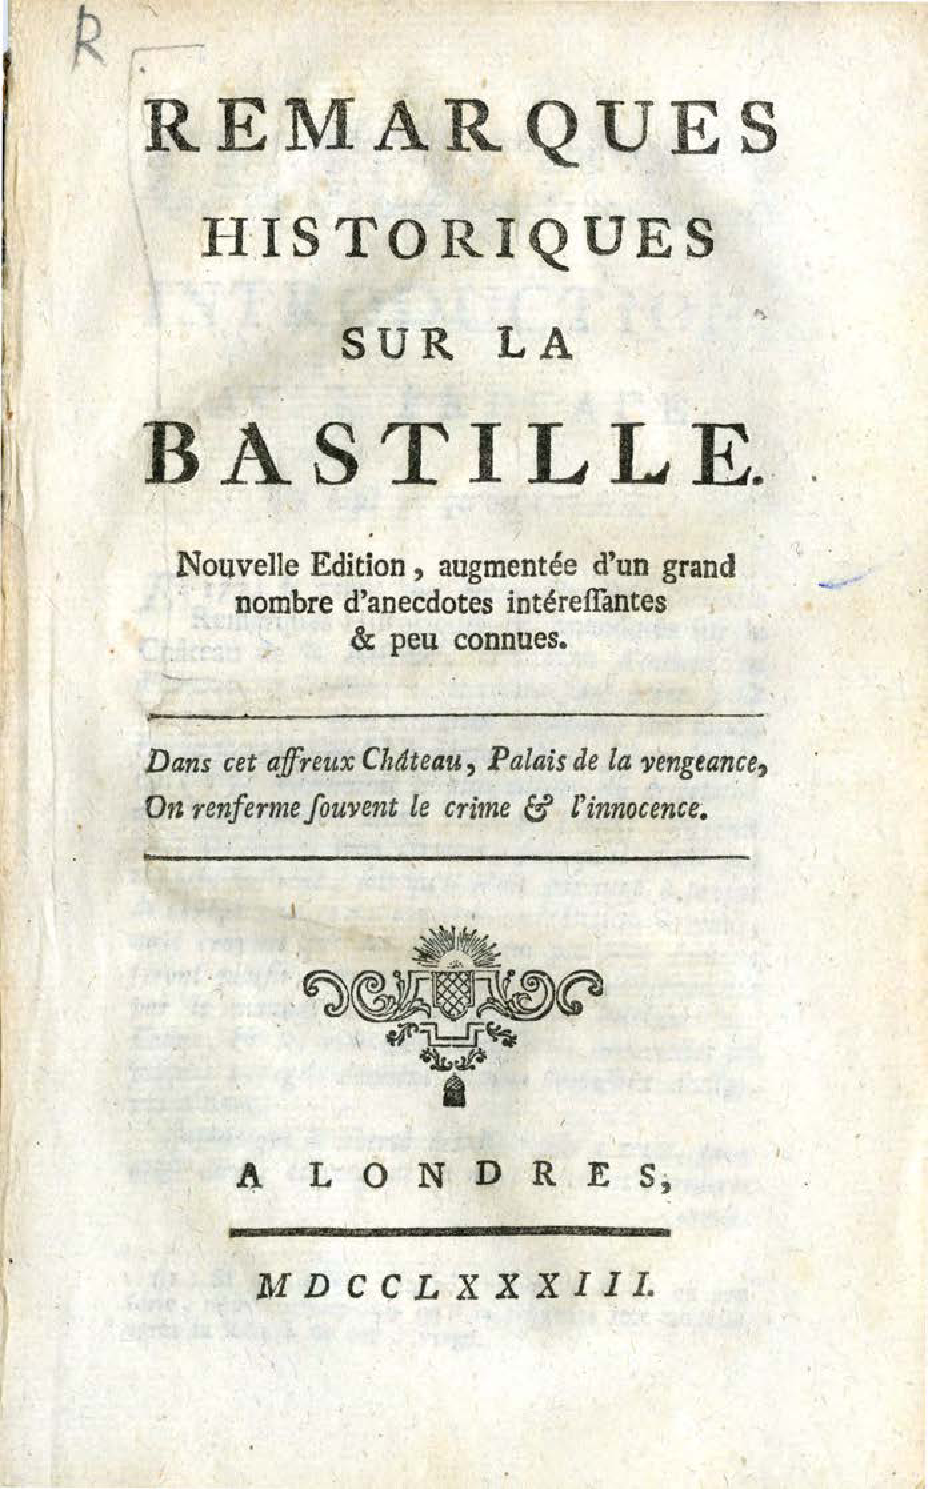 Aménager Un Jardin En Longueur Nouveau Title to Page 69 French Revolution Pamphlets Ball State